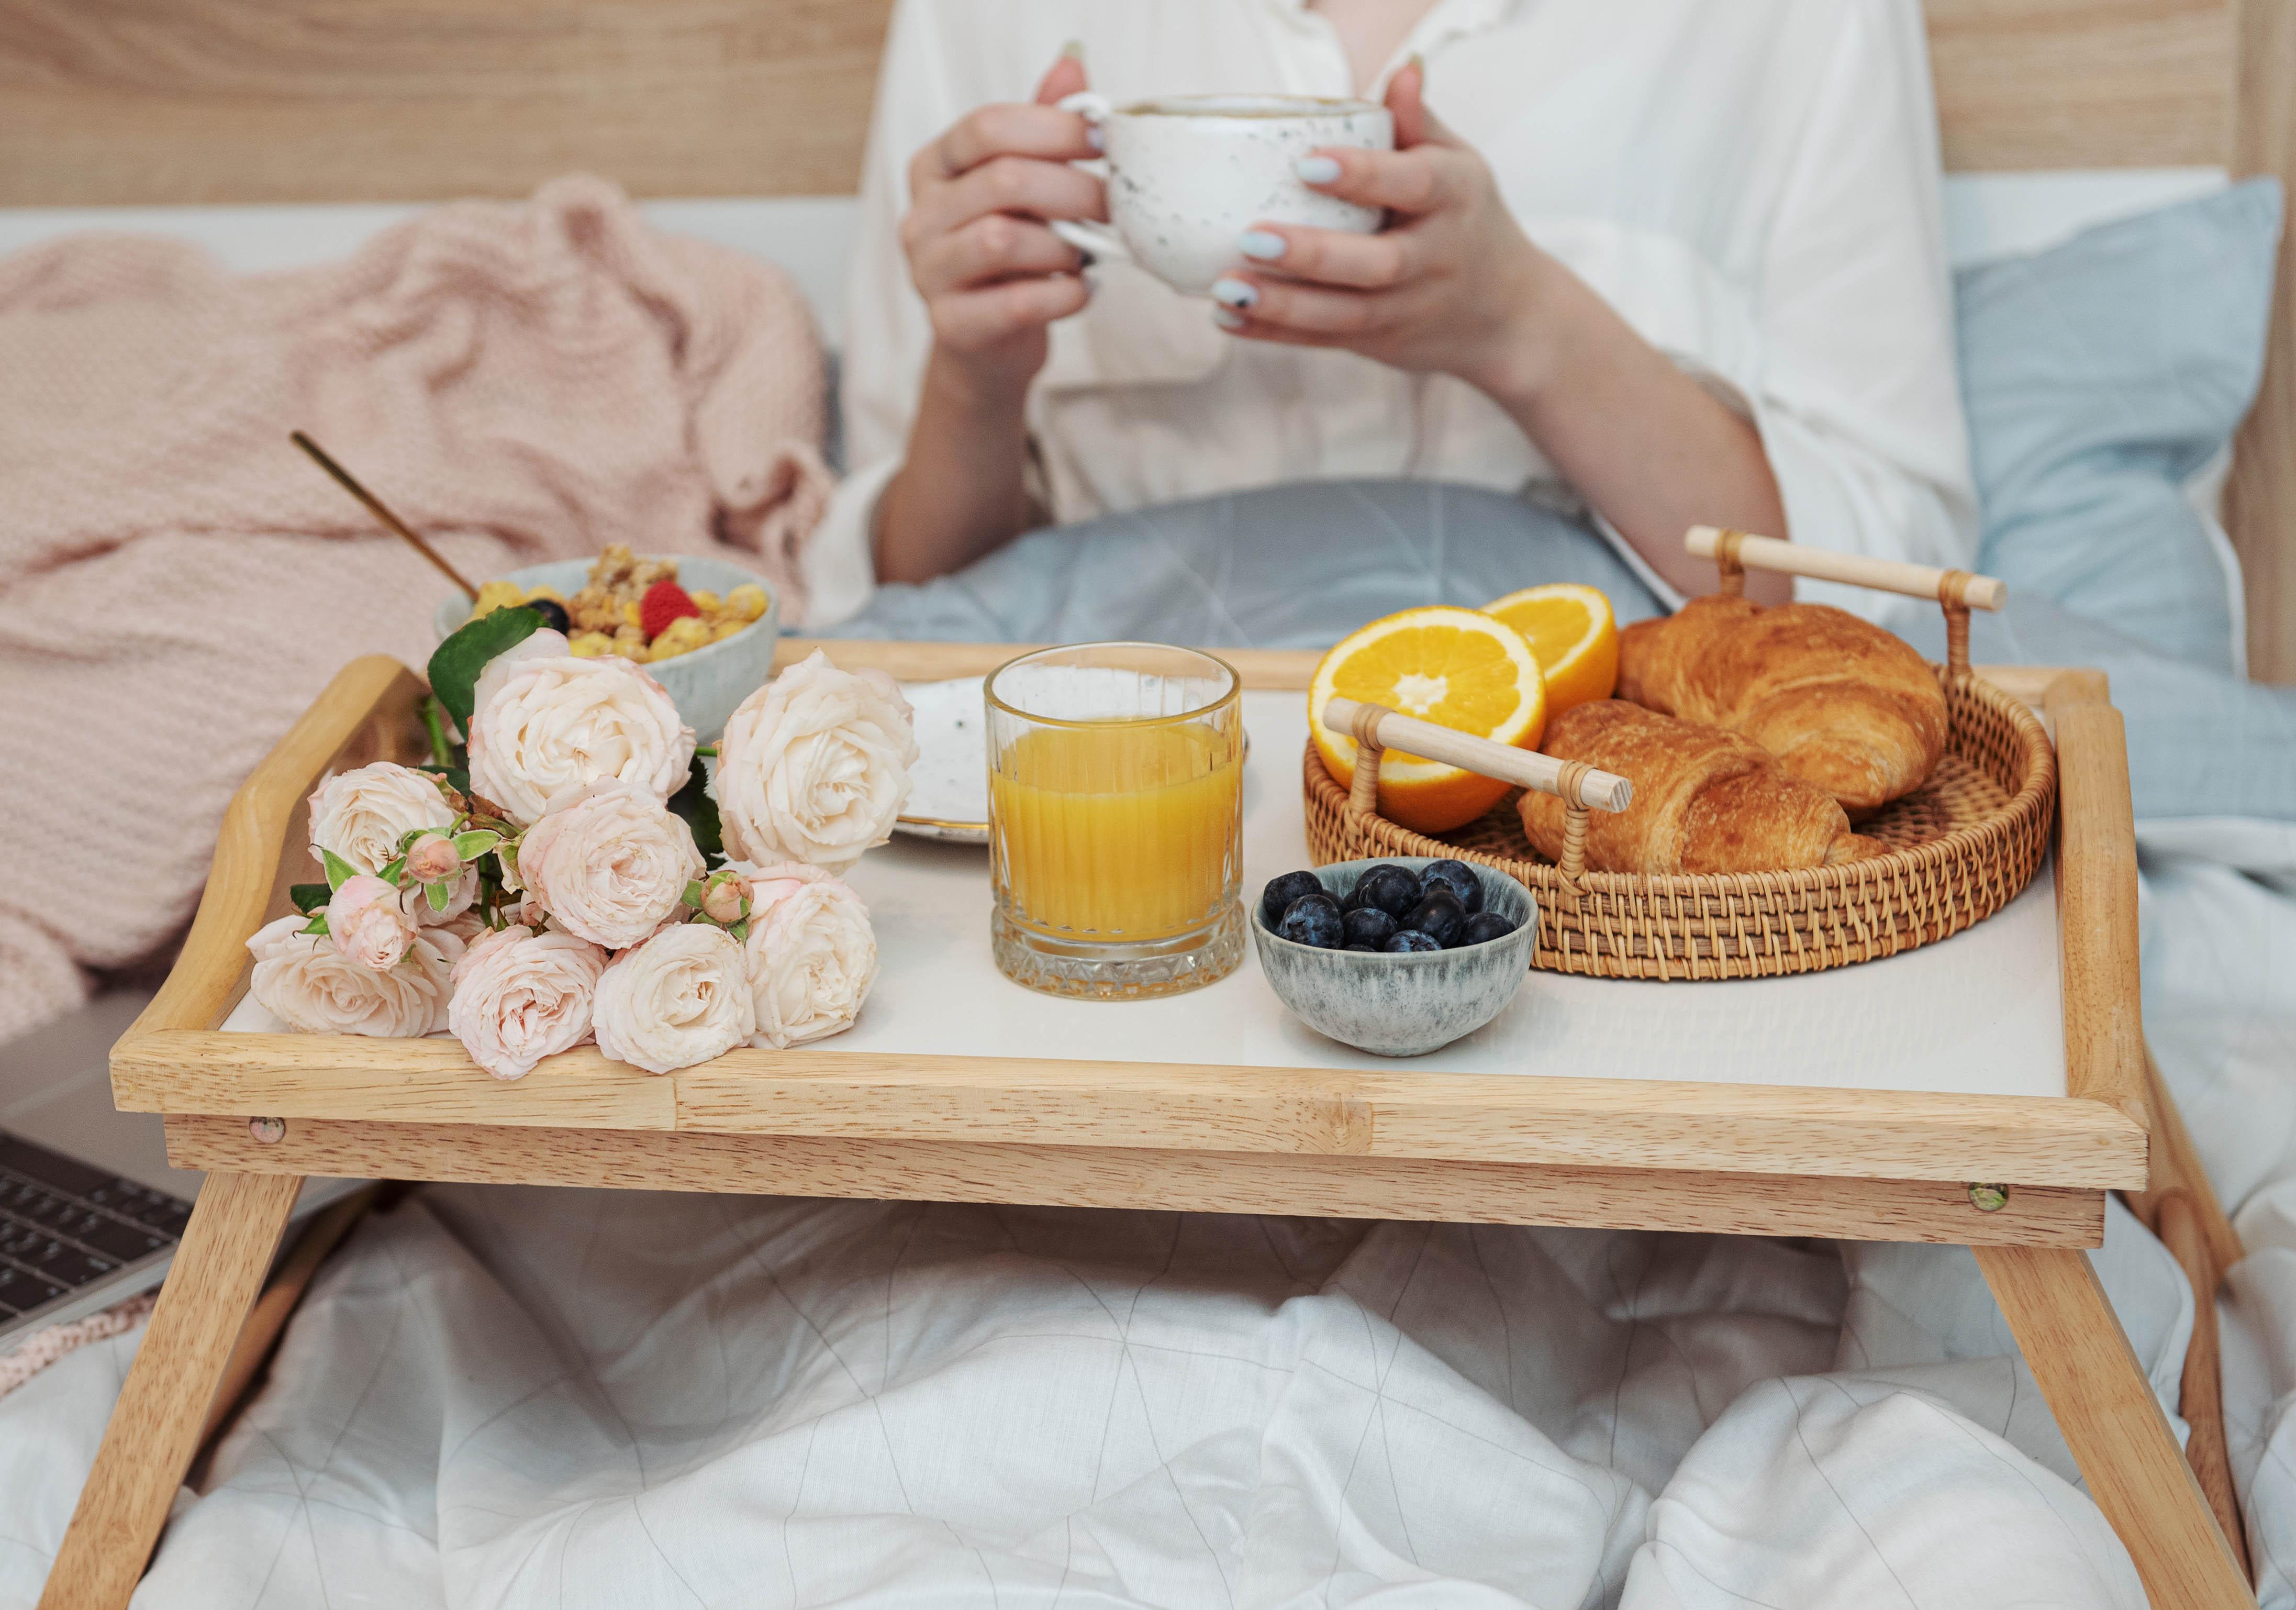 Fête des mères: nos meilleures recettes pour un petit-déjeuner au lit -  Cuisine et Recettes - Recette - Femmes d'Aujourd'hui Délices